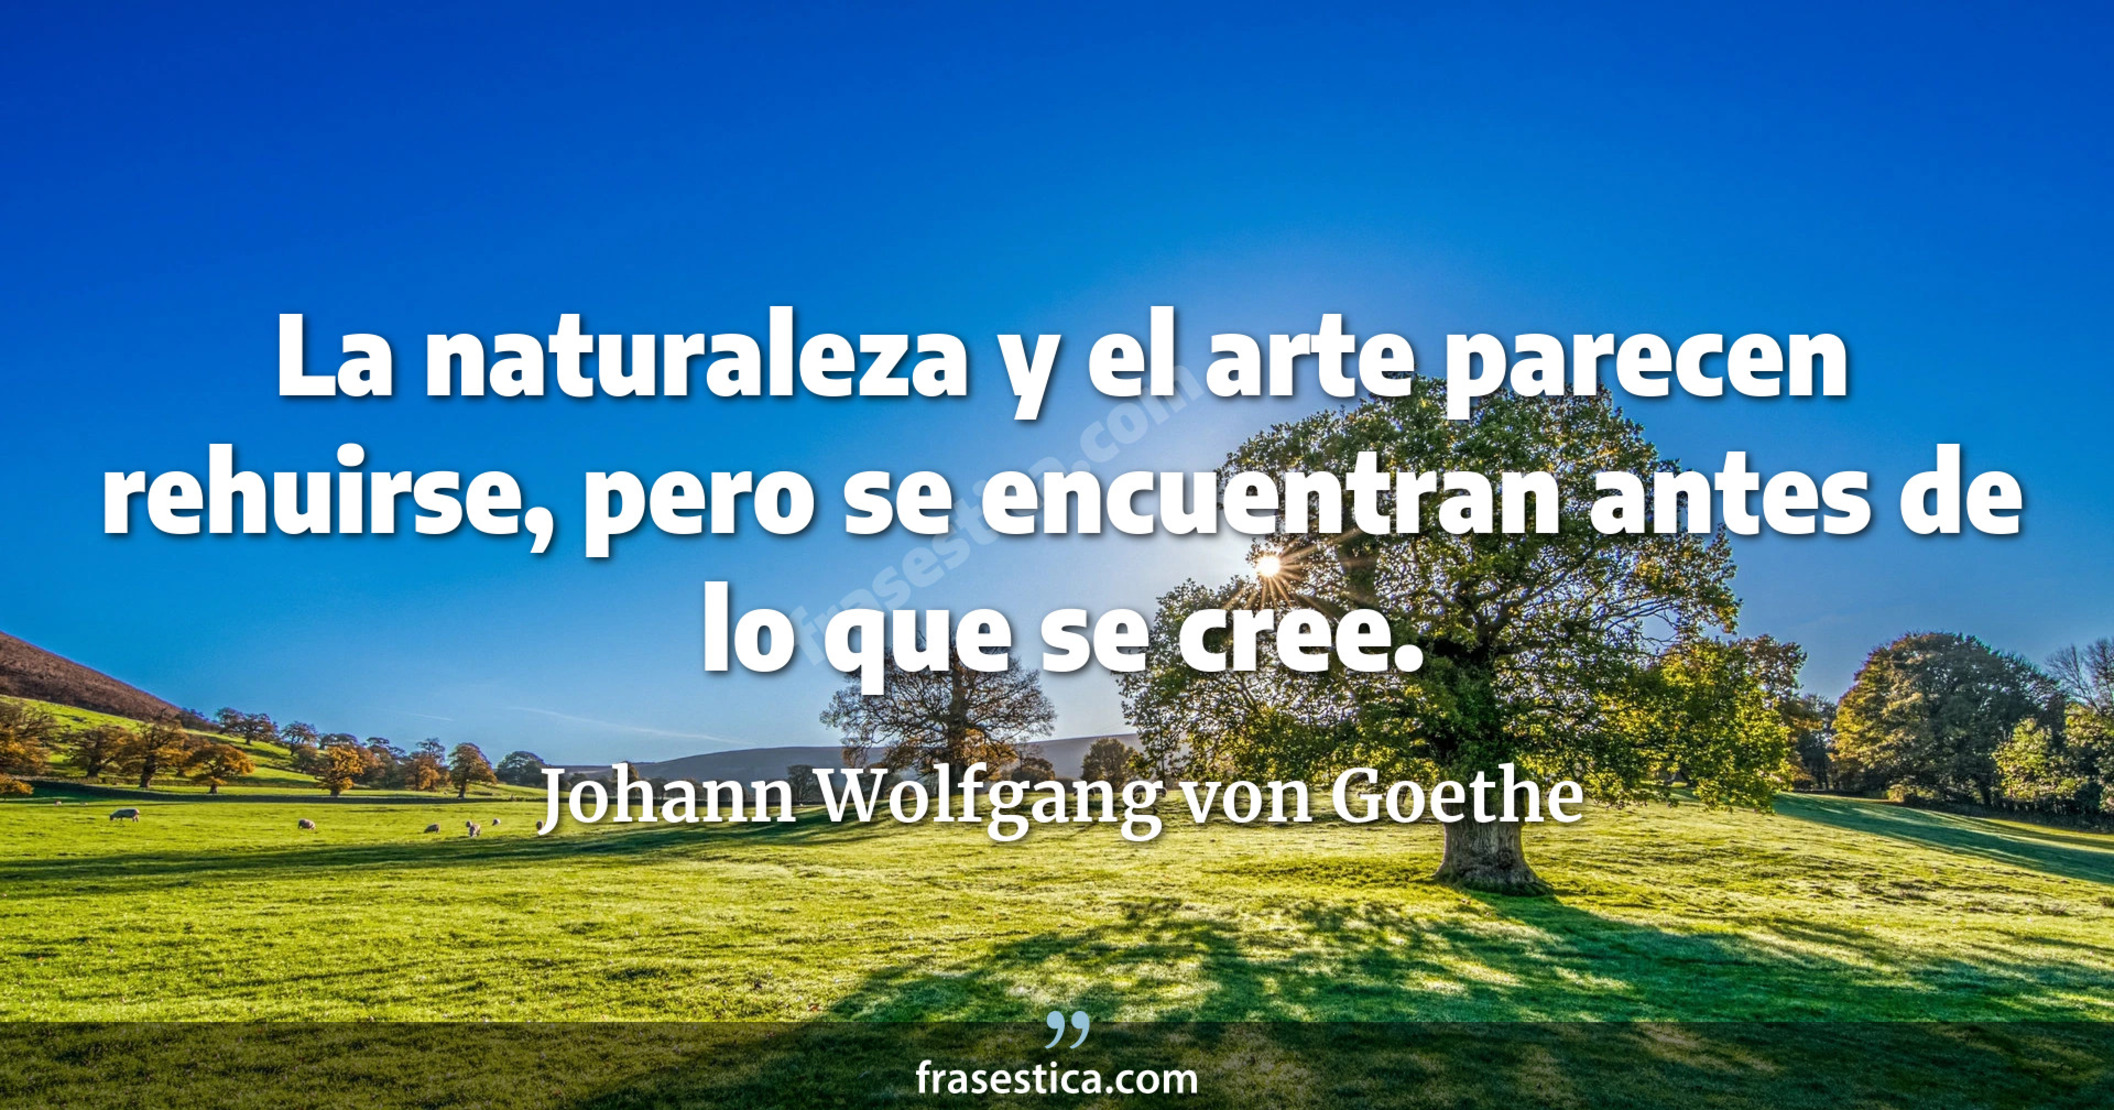 La naturaleza y el arte parecen rehuirse, pero se encuentran antes de lo que se cree. - Johann Wolfgang von Goethe